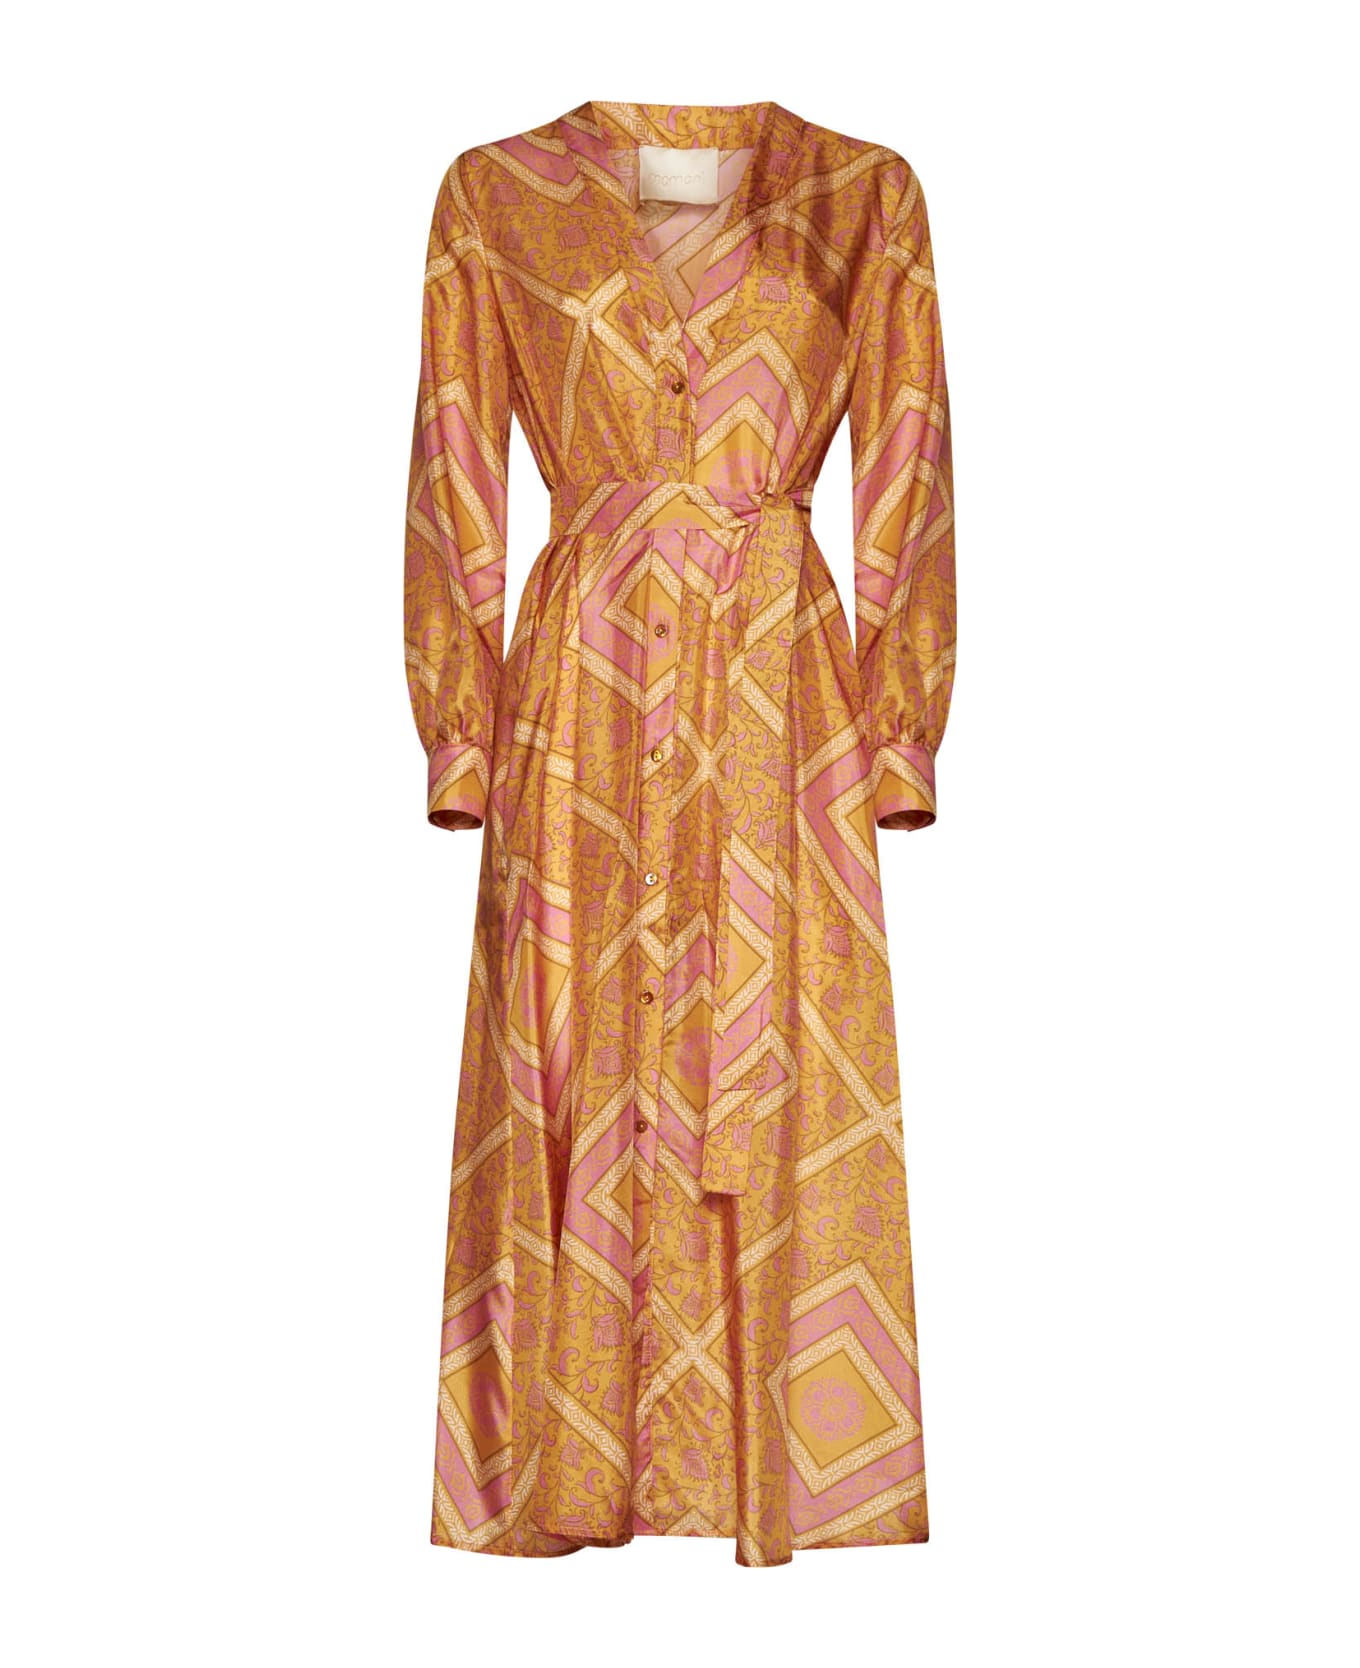 Momonì Dress - Arancio/fucsia